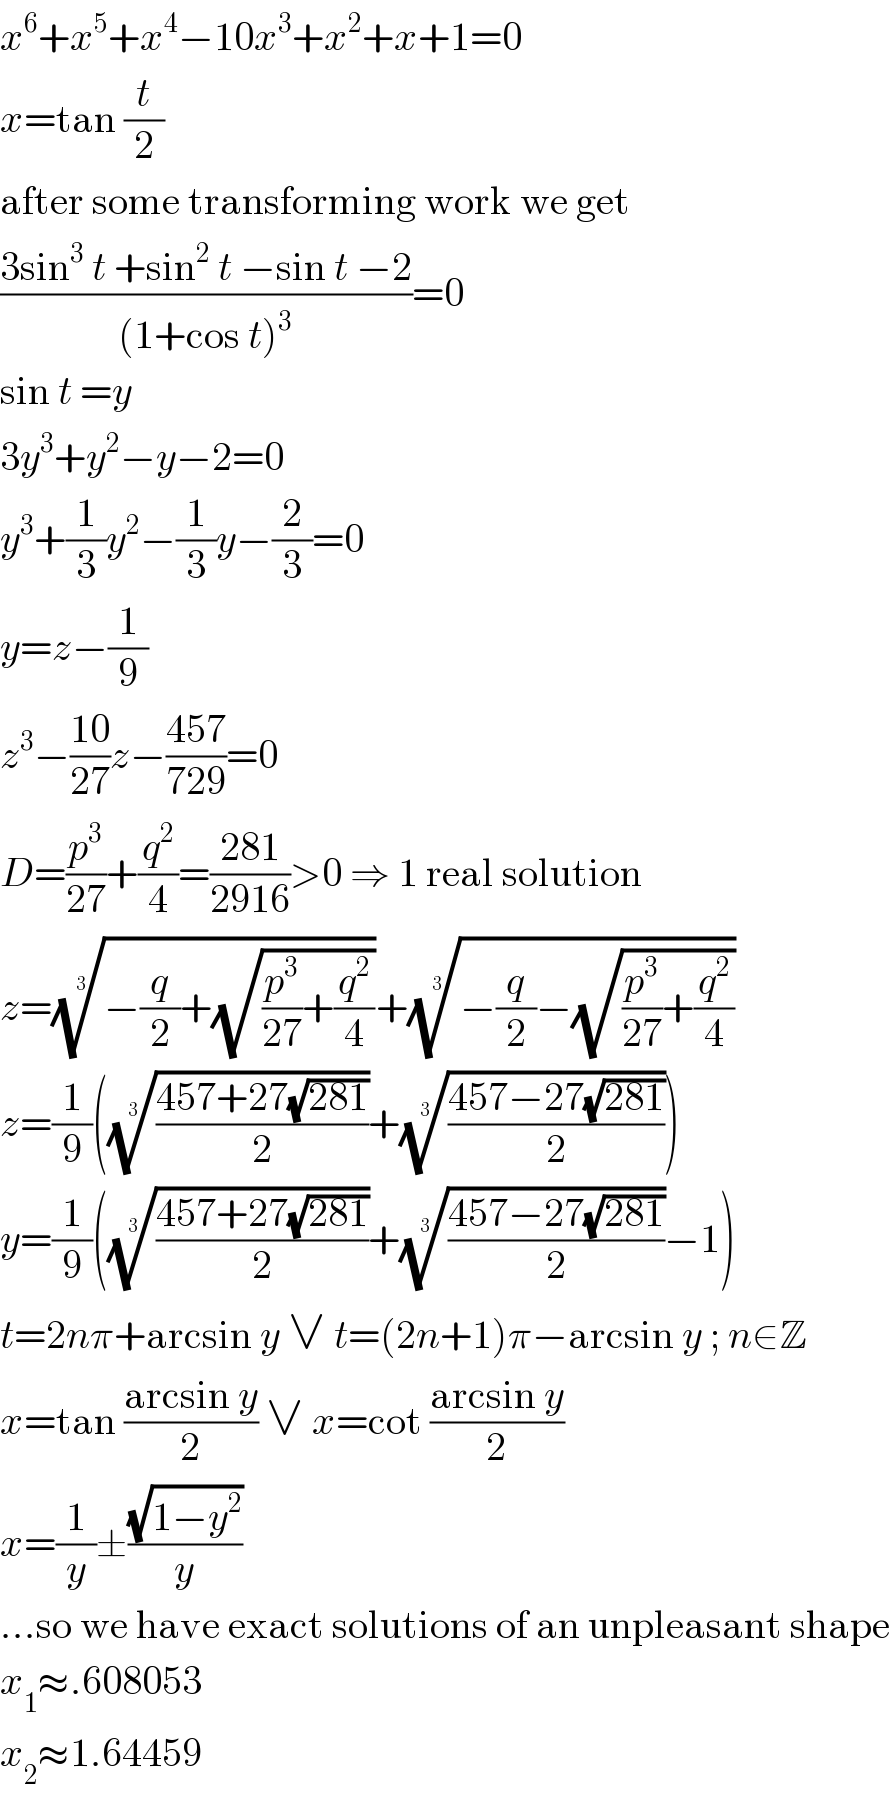 x^6 +x^5 +x^4 −10x^3 +x^2 +x+1=0  x=tan (t/2)  after some transforming work we get  ((3sin^3  t +sin^2  t −sin t −2)/((1+cos t)^3 ))=0  sin t =y  3y^3 +y^2 −y−2=0  y^3 +(1/3)y^2 −(1/3)y−(2/3)=0  y=z−(1/9)  z^3 −((10)/(27))z−((457)/(729))=0  D=(p^3 /(27))+(q^2 /4)=((281)/(2916))>0 ⇒ 1 real solution  z=((−(q/2)+(√((p^3 /(27))+(q^2 /4)))))^(1/3) +((−(q/2)−(√((p^3 /(27))+(q^2 /4)))))^(1/3)   z=(1/9)((((457+27(√(281)))/2))^(1/3) +(((457−27(√(281)))/2))^(1/3) )  y=(1/9)((((457+27(√(281)))/2))^(1/3) +(((457−27(√(281)))/2))^(1/3) −1)  t=2nπ+arcsin y ∨ t=(2n+1)π−arcsin y ; n∈Z  x=tan ((arcsin y)/2) ∨ x=cot ((arcsin y)/2)  x=(1/y)±((√(1−y^2 ))/y)  ...so we have exact solutions of an unpleasant shape  x_1 ≈.608053  x_2 ≈1.64459  